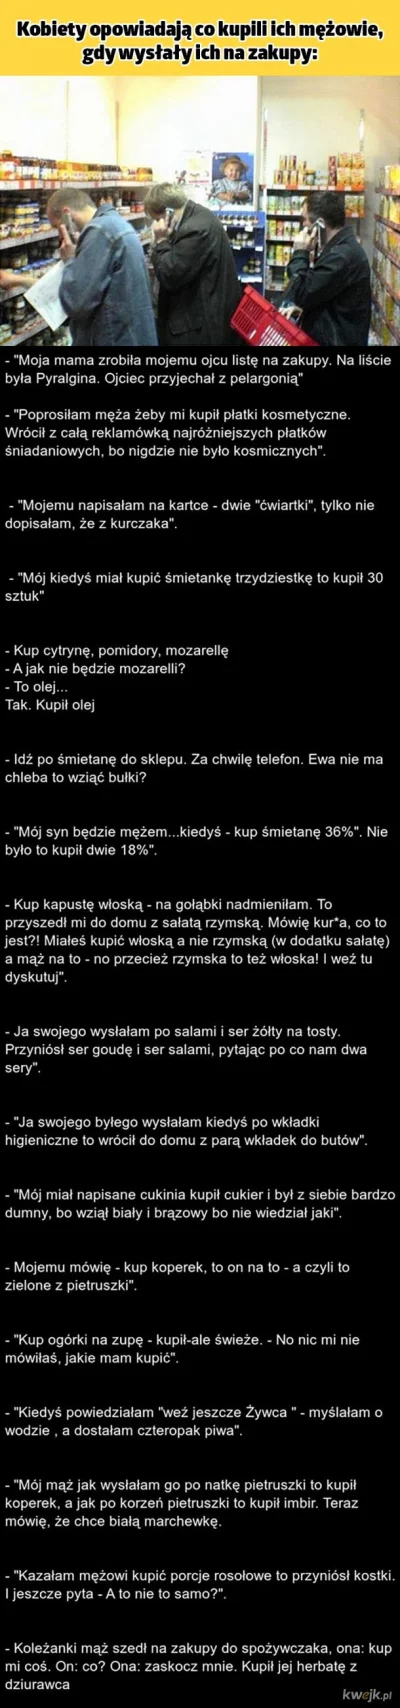 galmok - #heheszki #logikaniebieskichpaskow